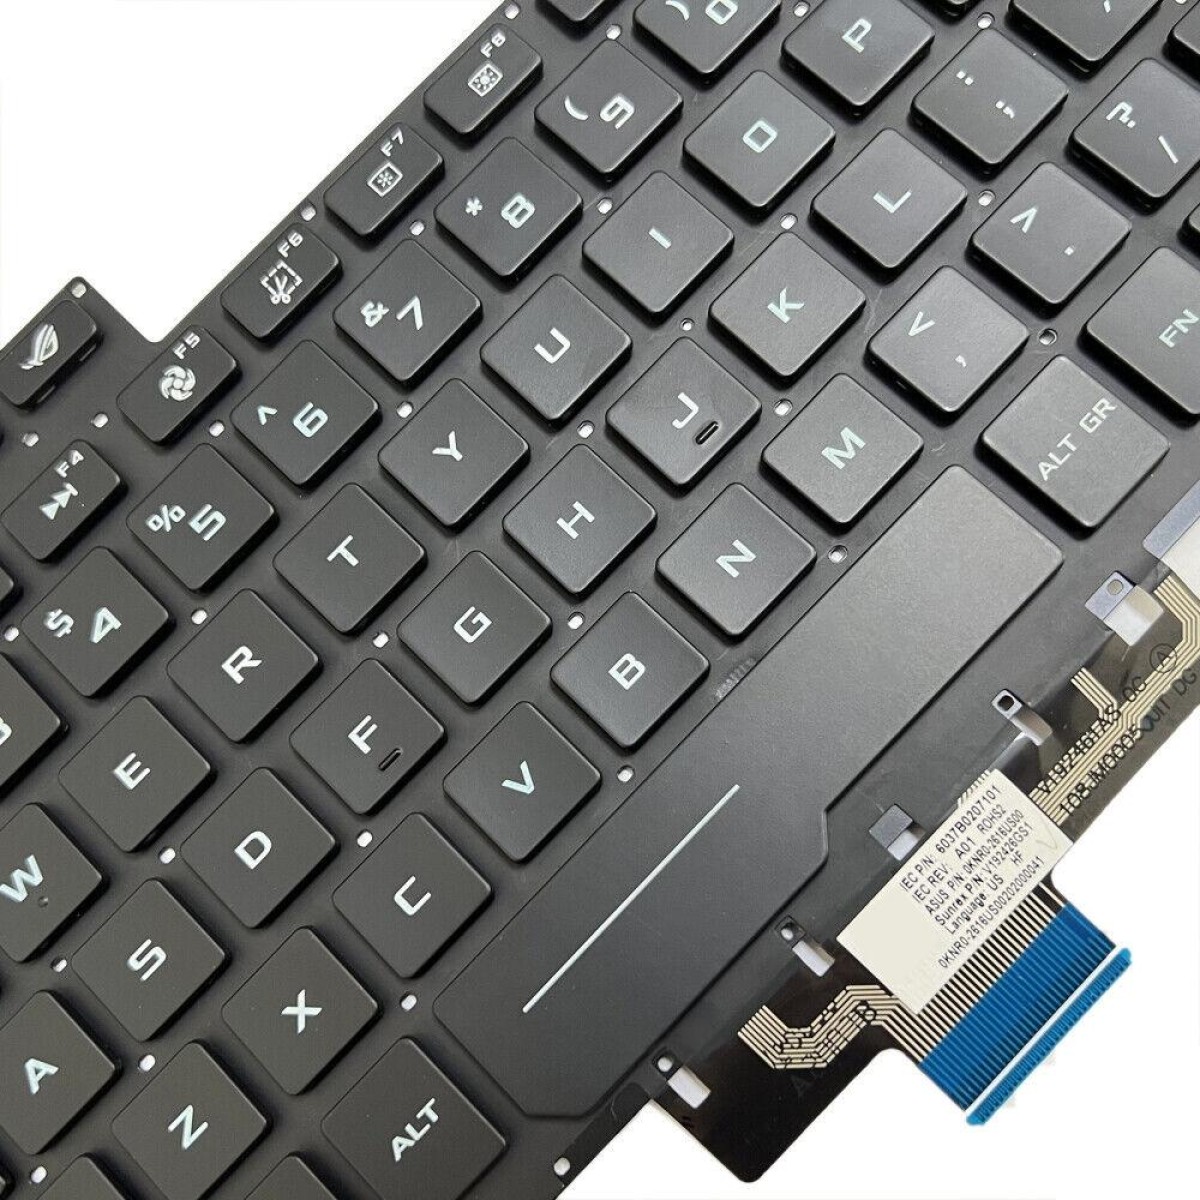 For ASUS ROG G14 Zephyrus GA401 GA401I US Version Backlight Laptop Keyboard(Black)